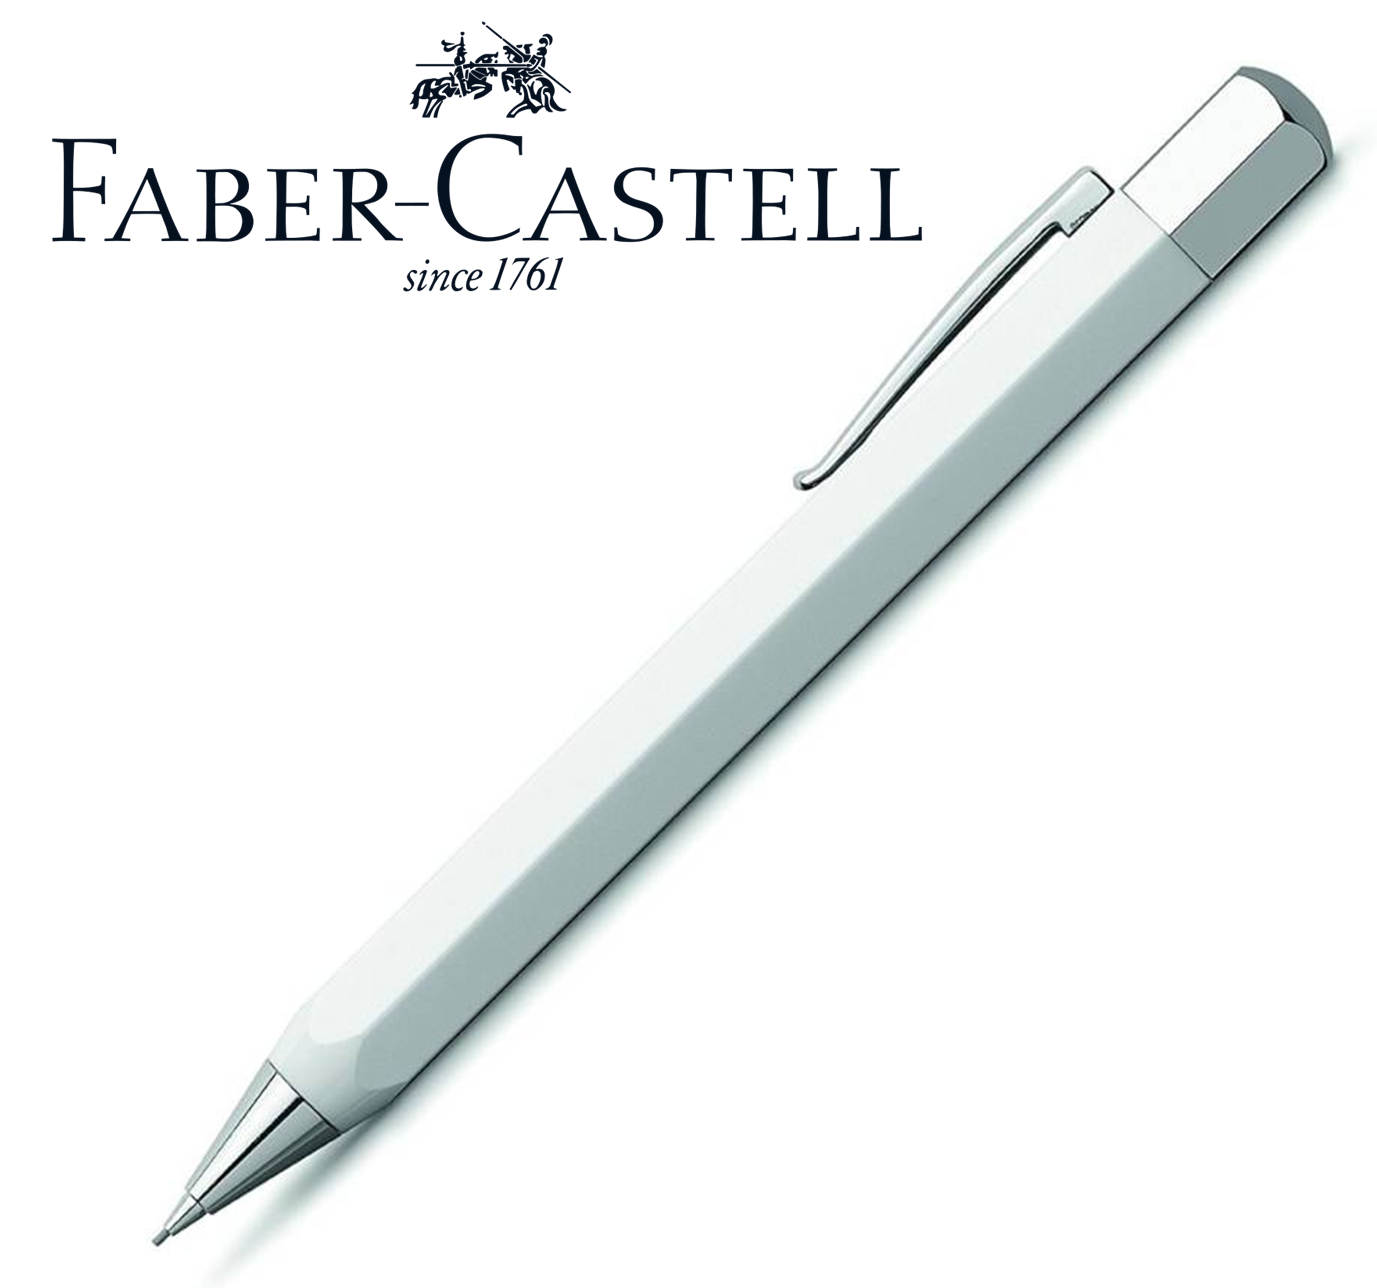 Faber-Castell - ONDORO - biela živica (mechanická ceruzka 0.7mm)